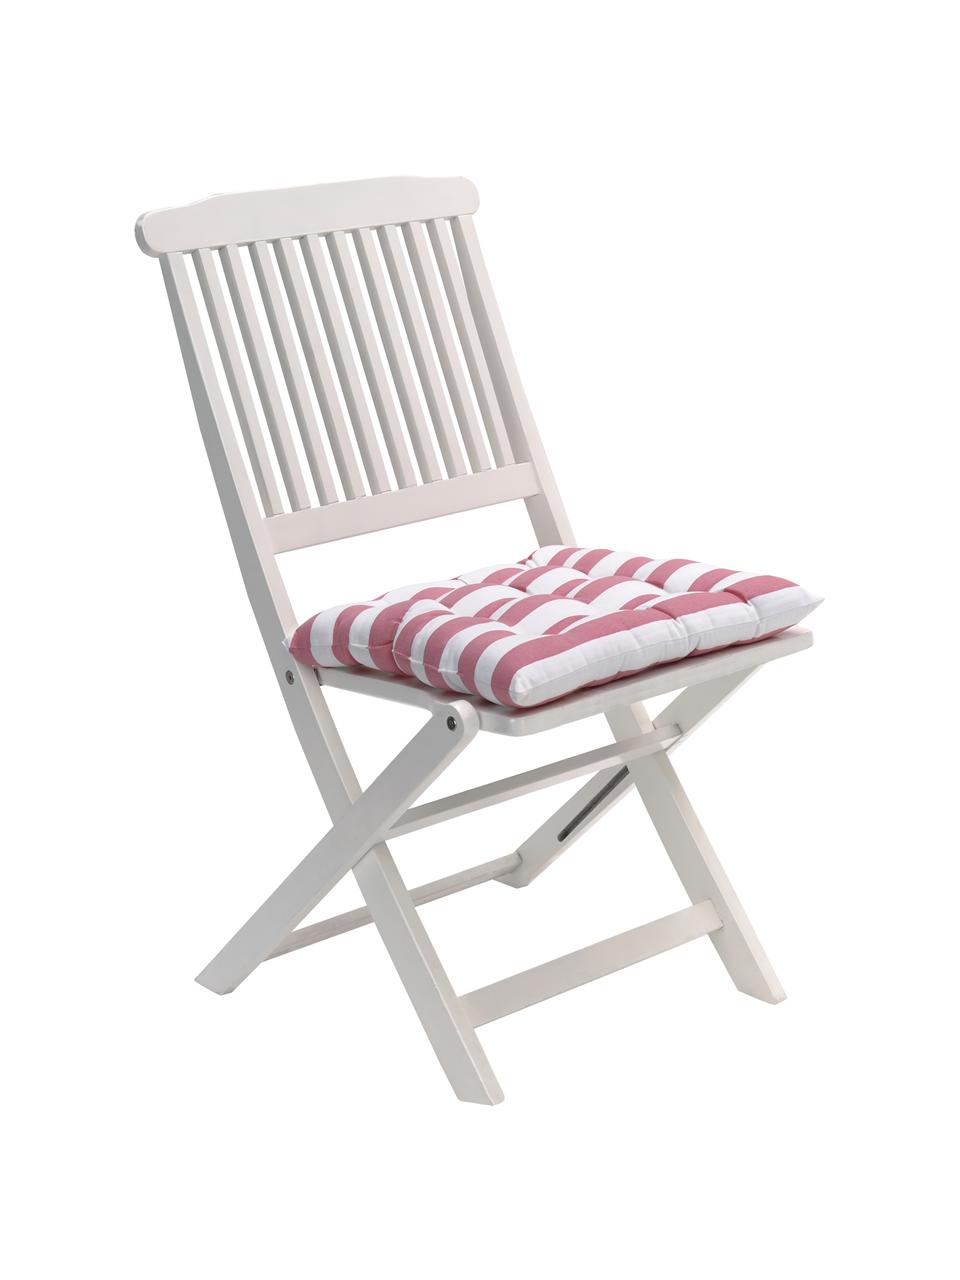 Cuscino sedia a righe color rosa/bianco Timon, Rivestimento: 100% cotone, Rosa, bianco, Larg. 40 x Lung. 40 cm